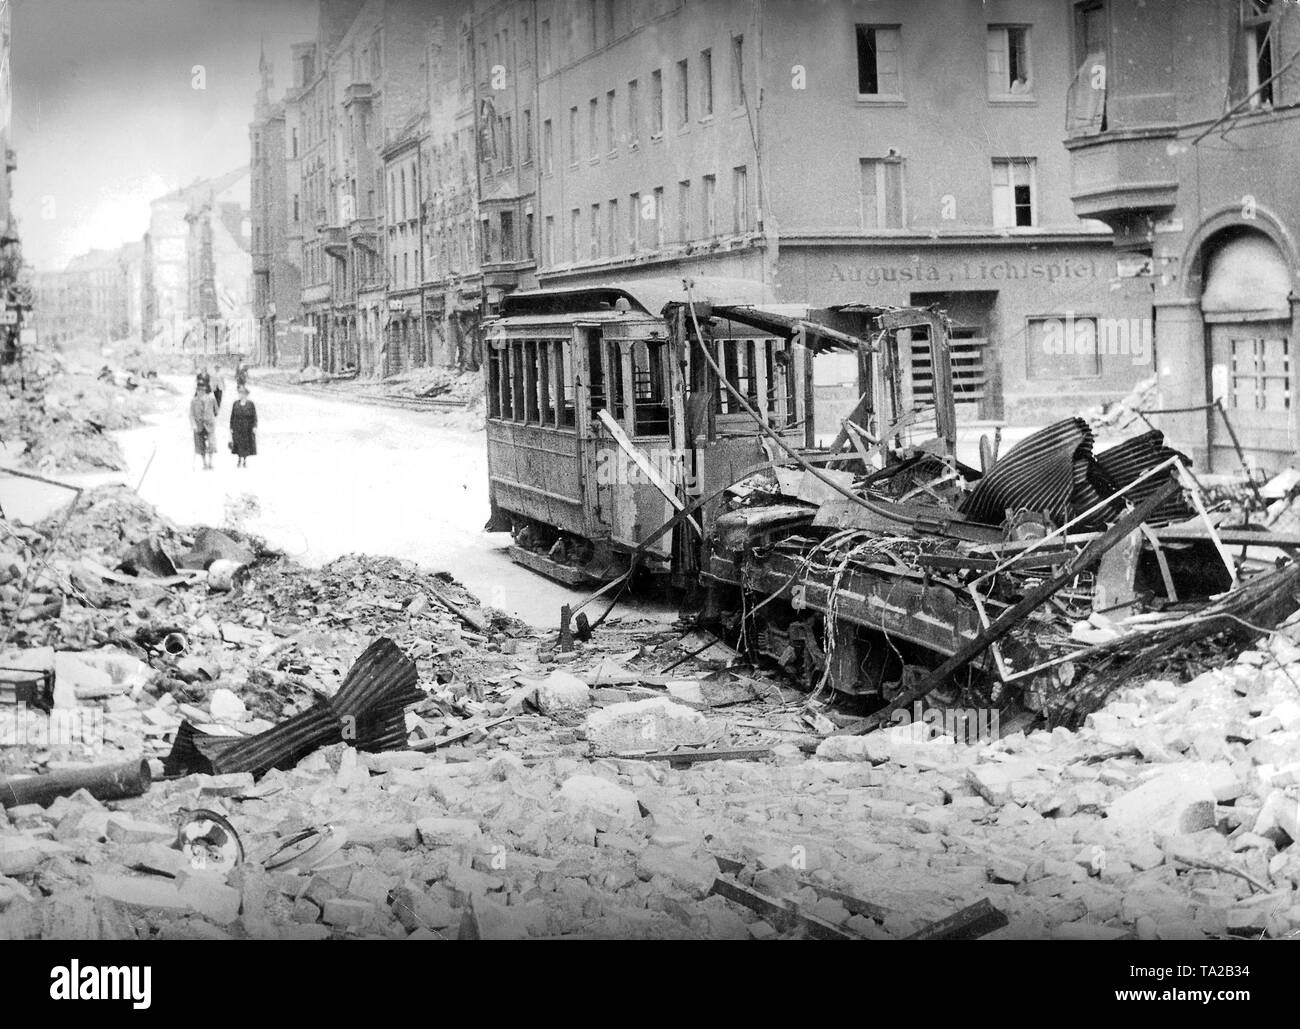 Weltkrieg II: Fußgänger in der Augustenstrasse, die voller Schutt ist. Im Vordergrund steht eine zerstörte Straßenbahn. Rechts im Hintergrund, ein Haus mit der Aufschrift 'Augusta Lichtspiele". Stockfoto